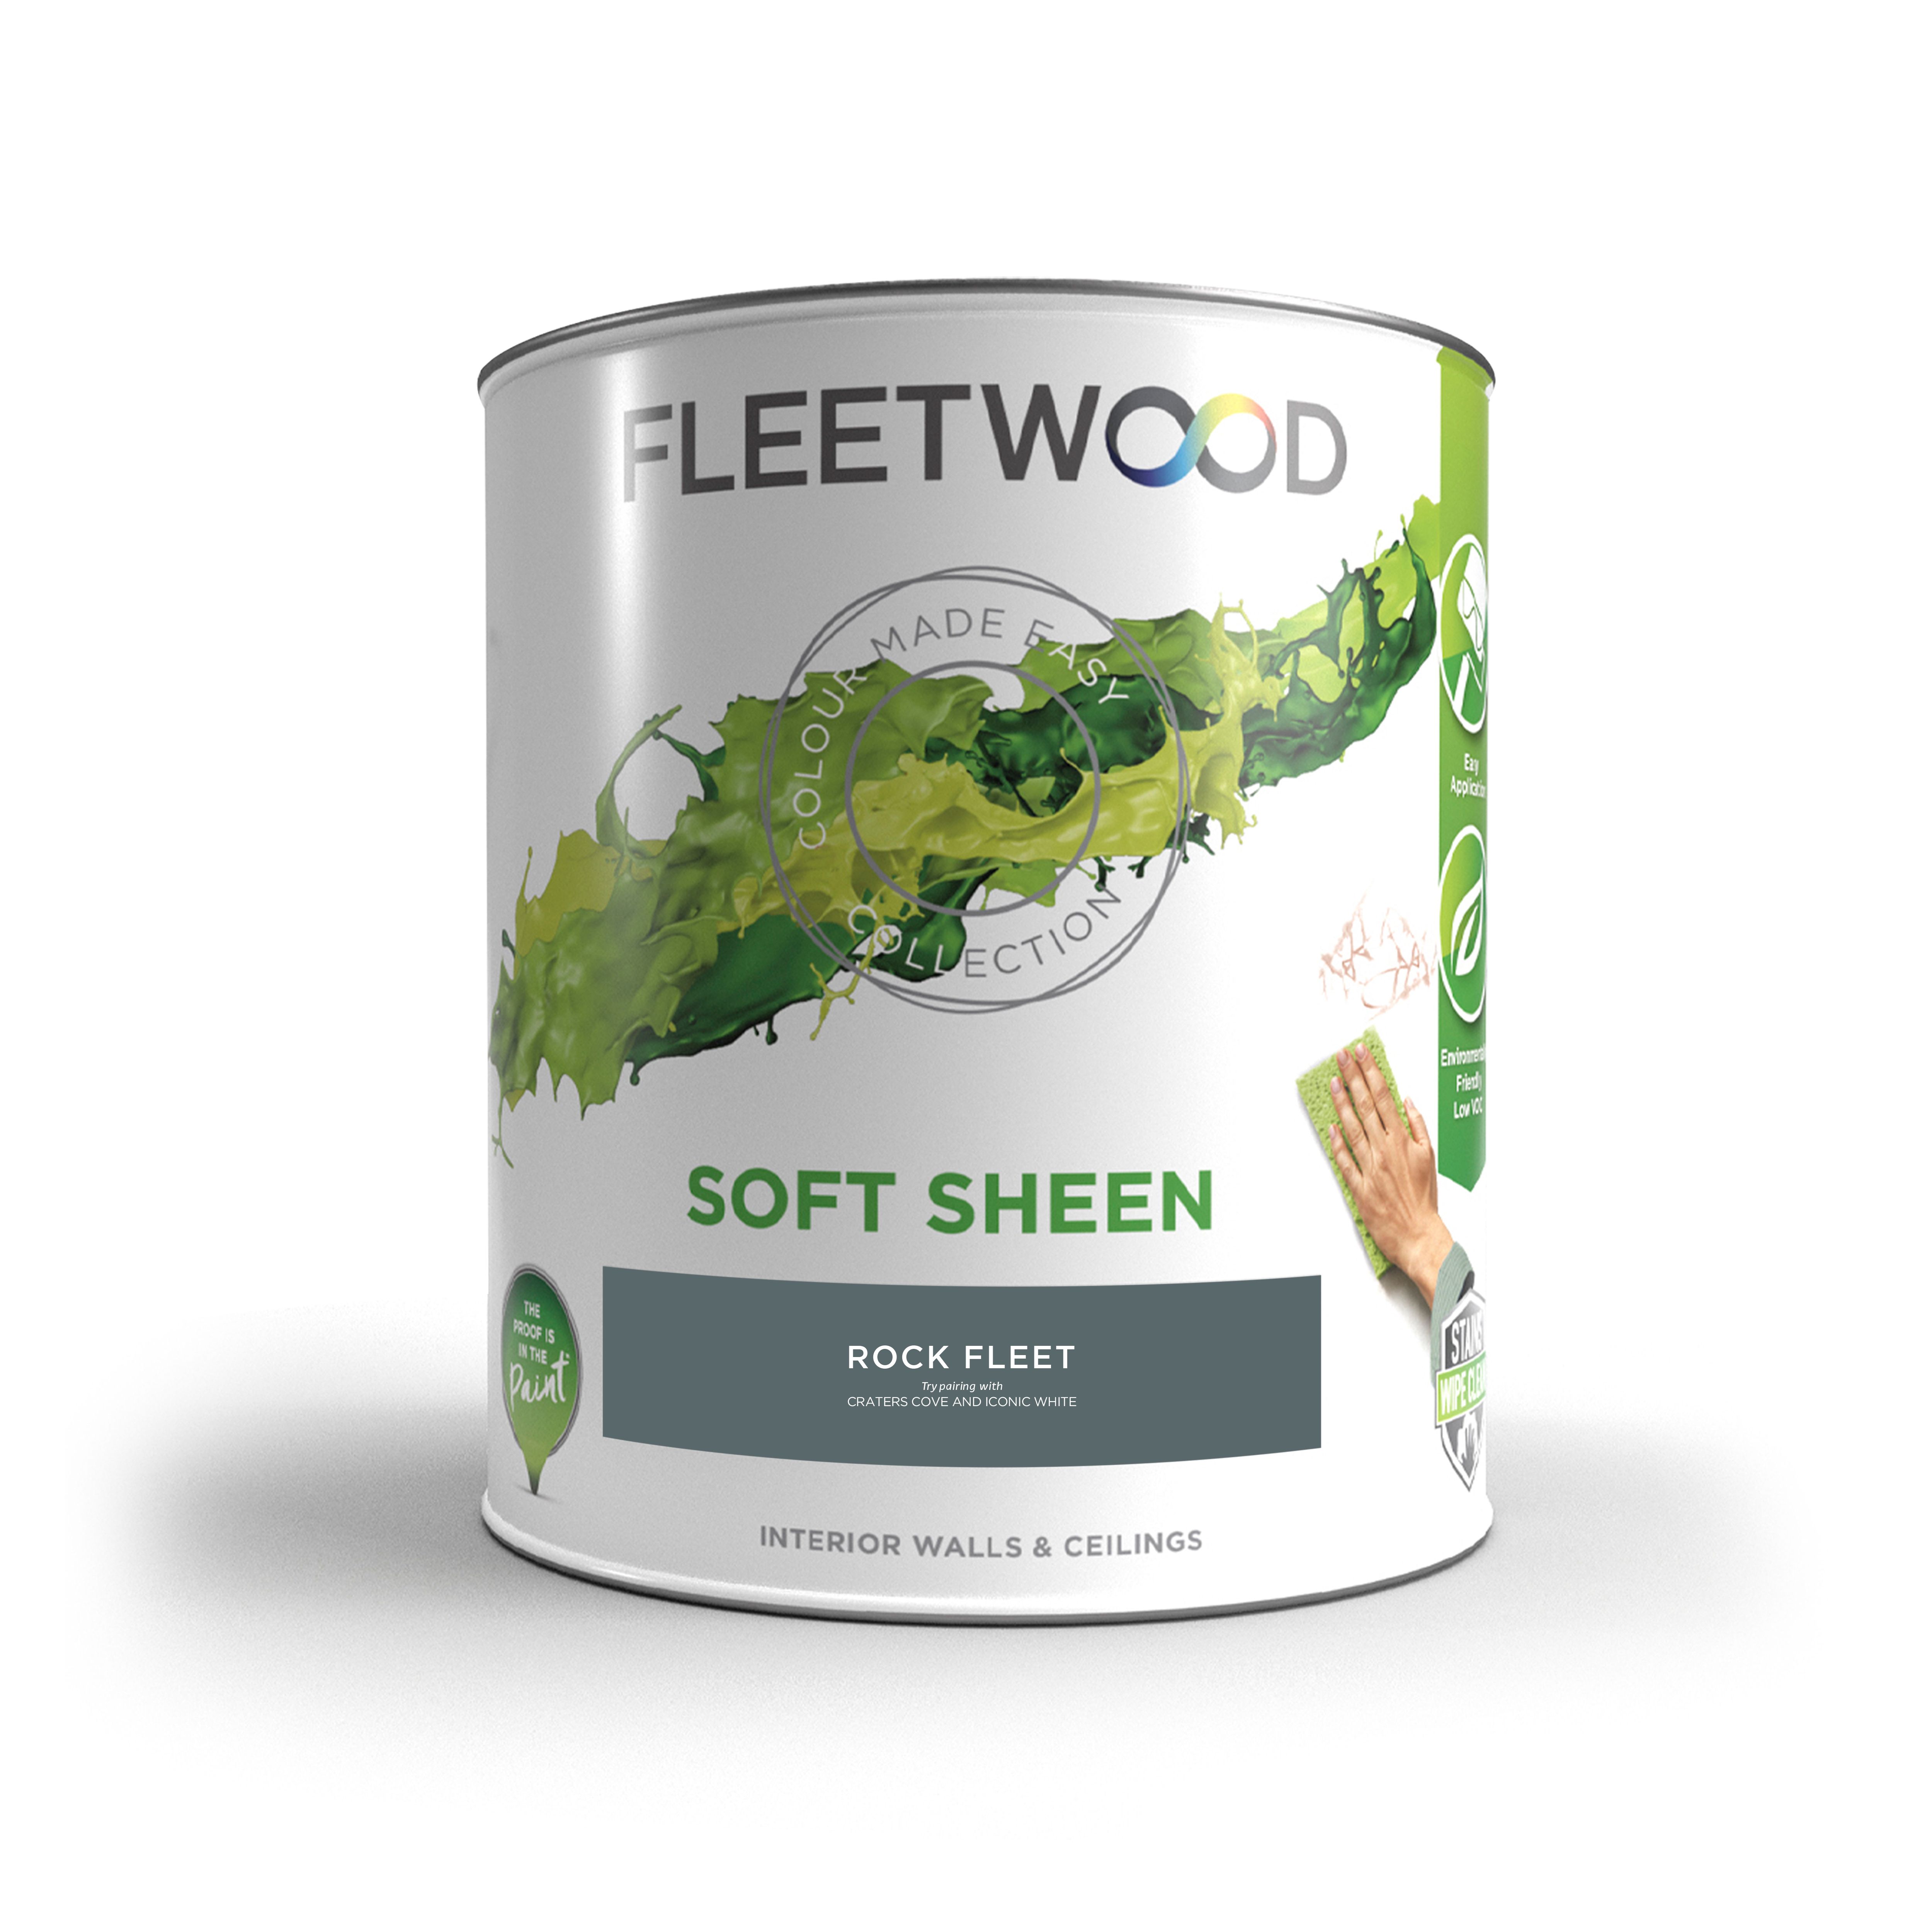 Fleetwood Rock Fleet Soft sheen Emulsion paint, 5L